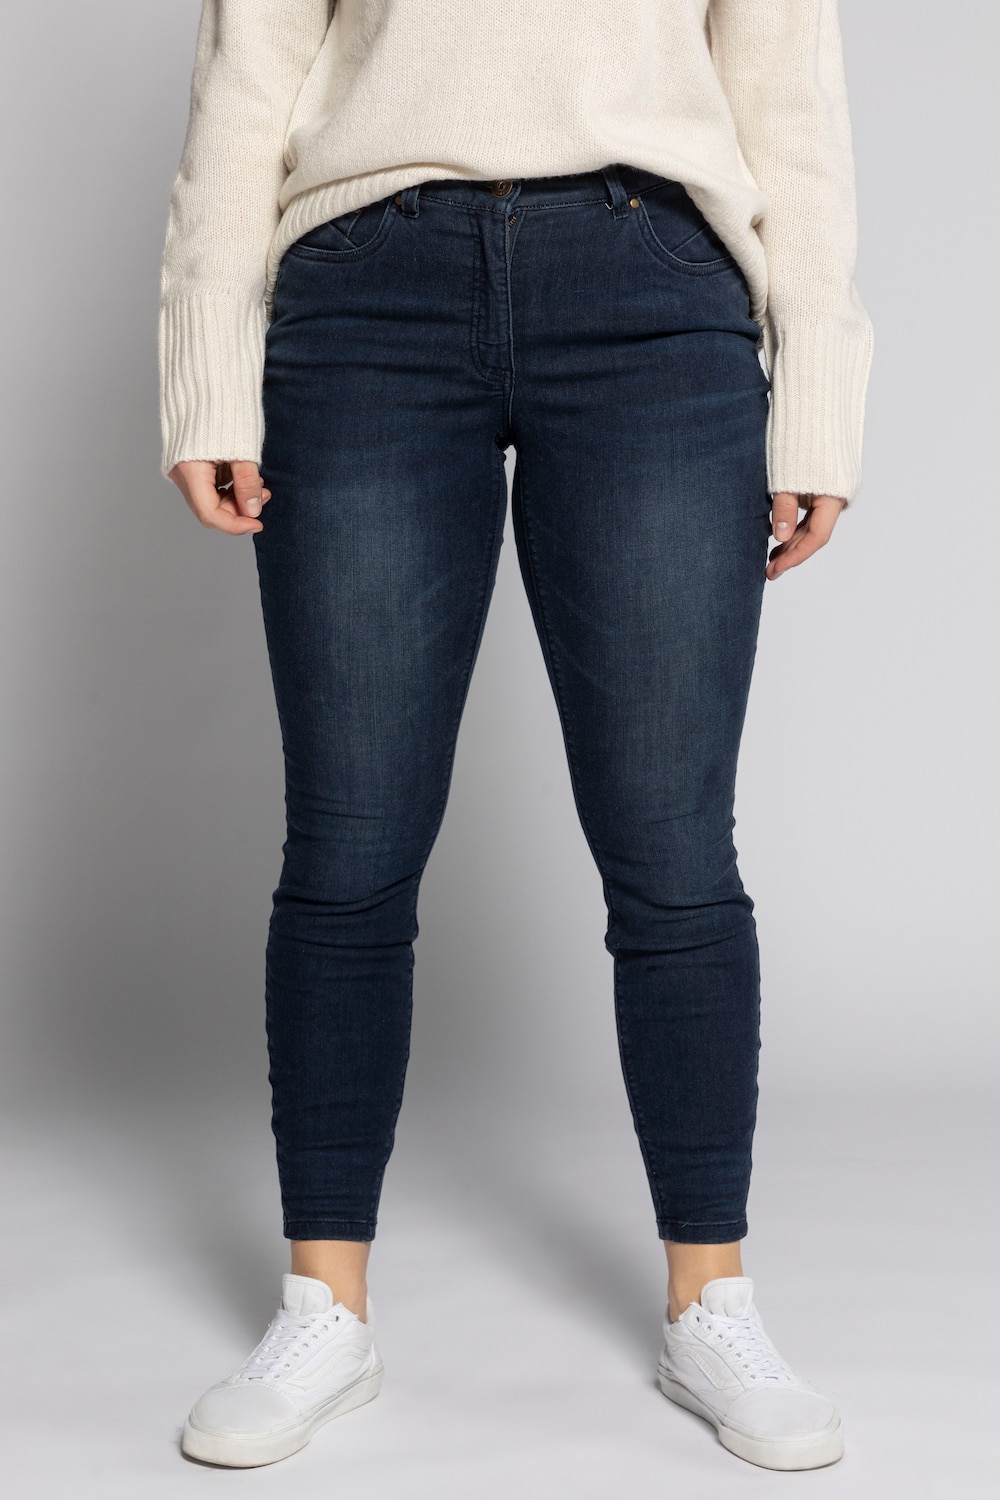 Grote Maten skinny jeans, Dames, blauw, Maat: 44, Katoen/Polyester/Synthetische vezels, Studio Untold